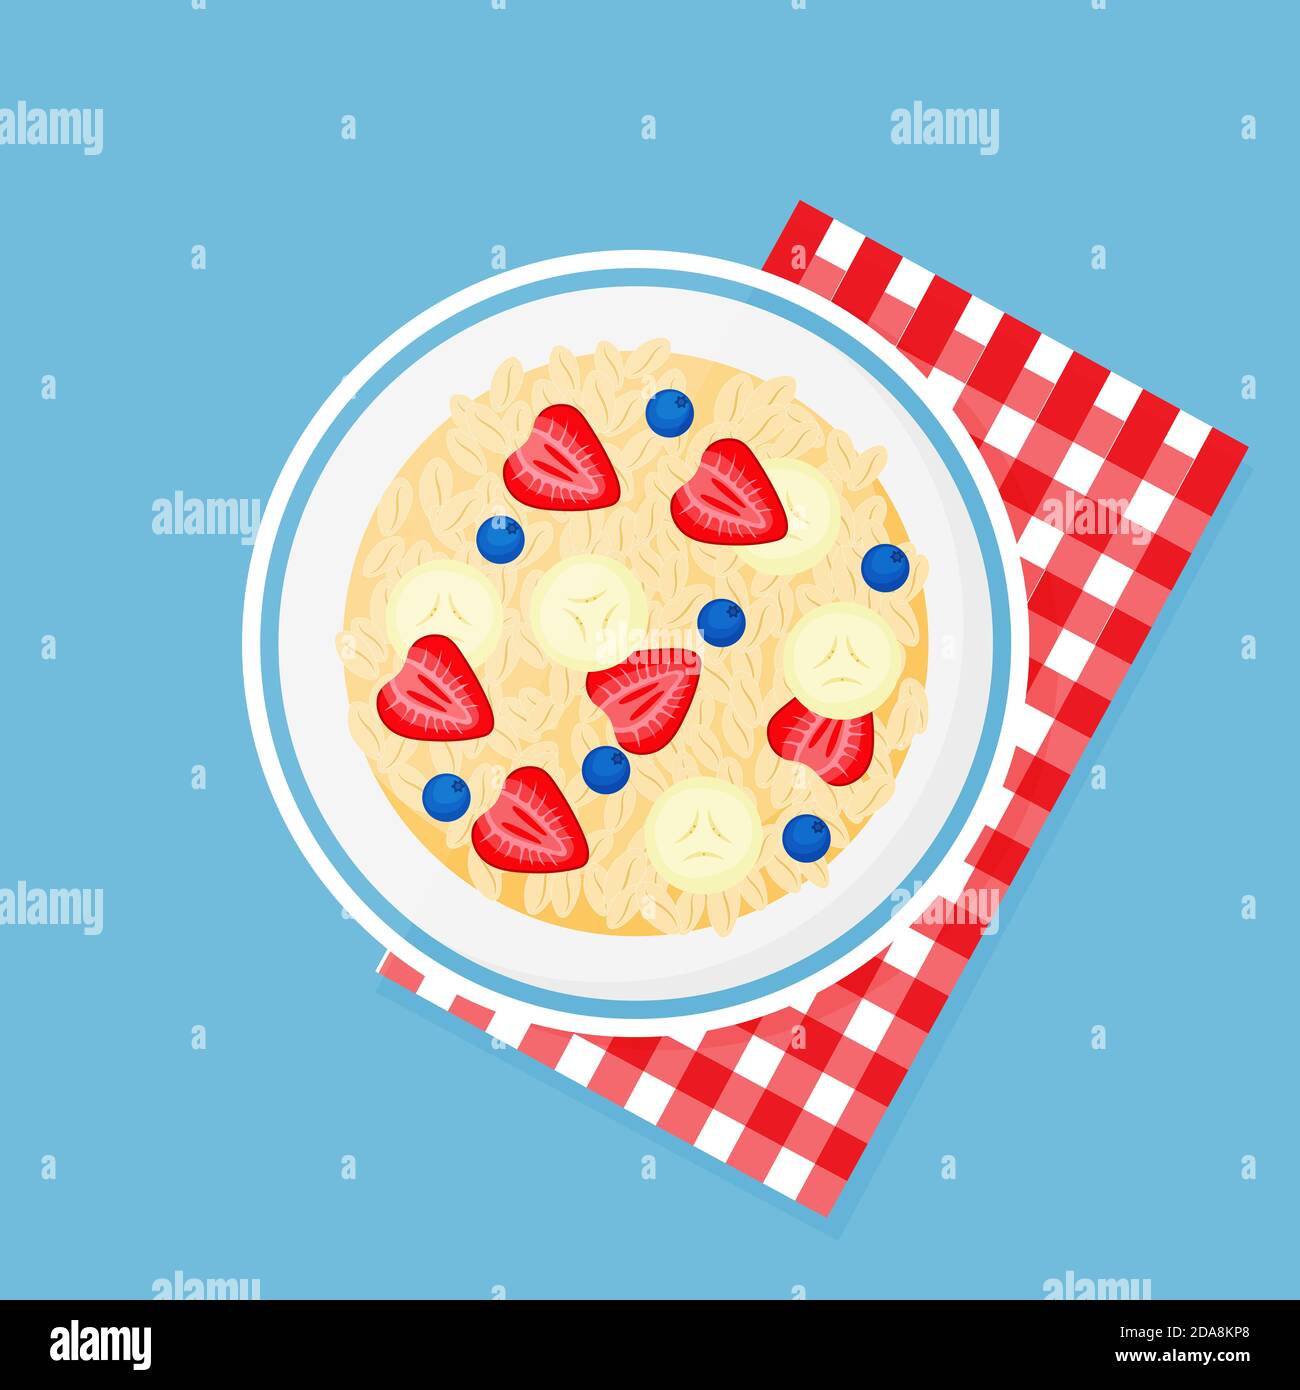 Granola, banane, fraises, bleuets dans un bol sur une serviette à carreaux rouges. Fruits muesli petit déjeuner naturel sain. Aliments sains, flocons d'avoine Illustration de Vecteur